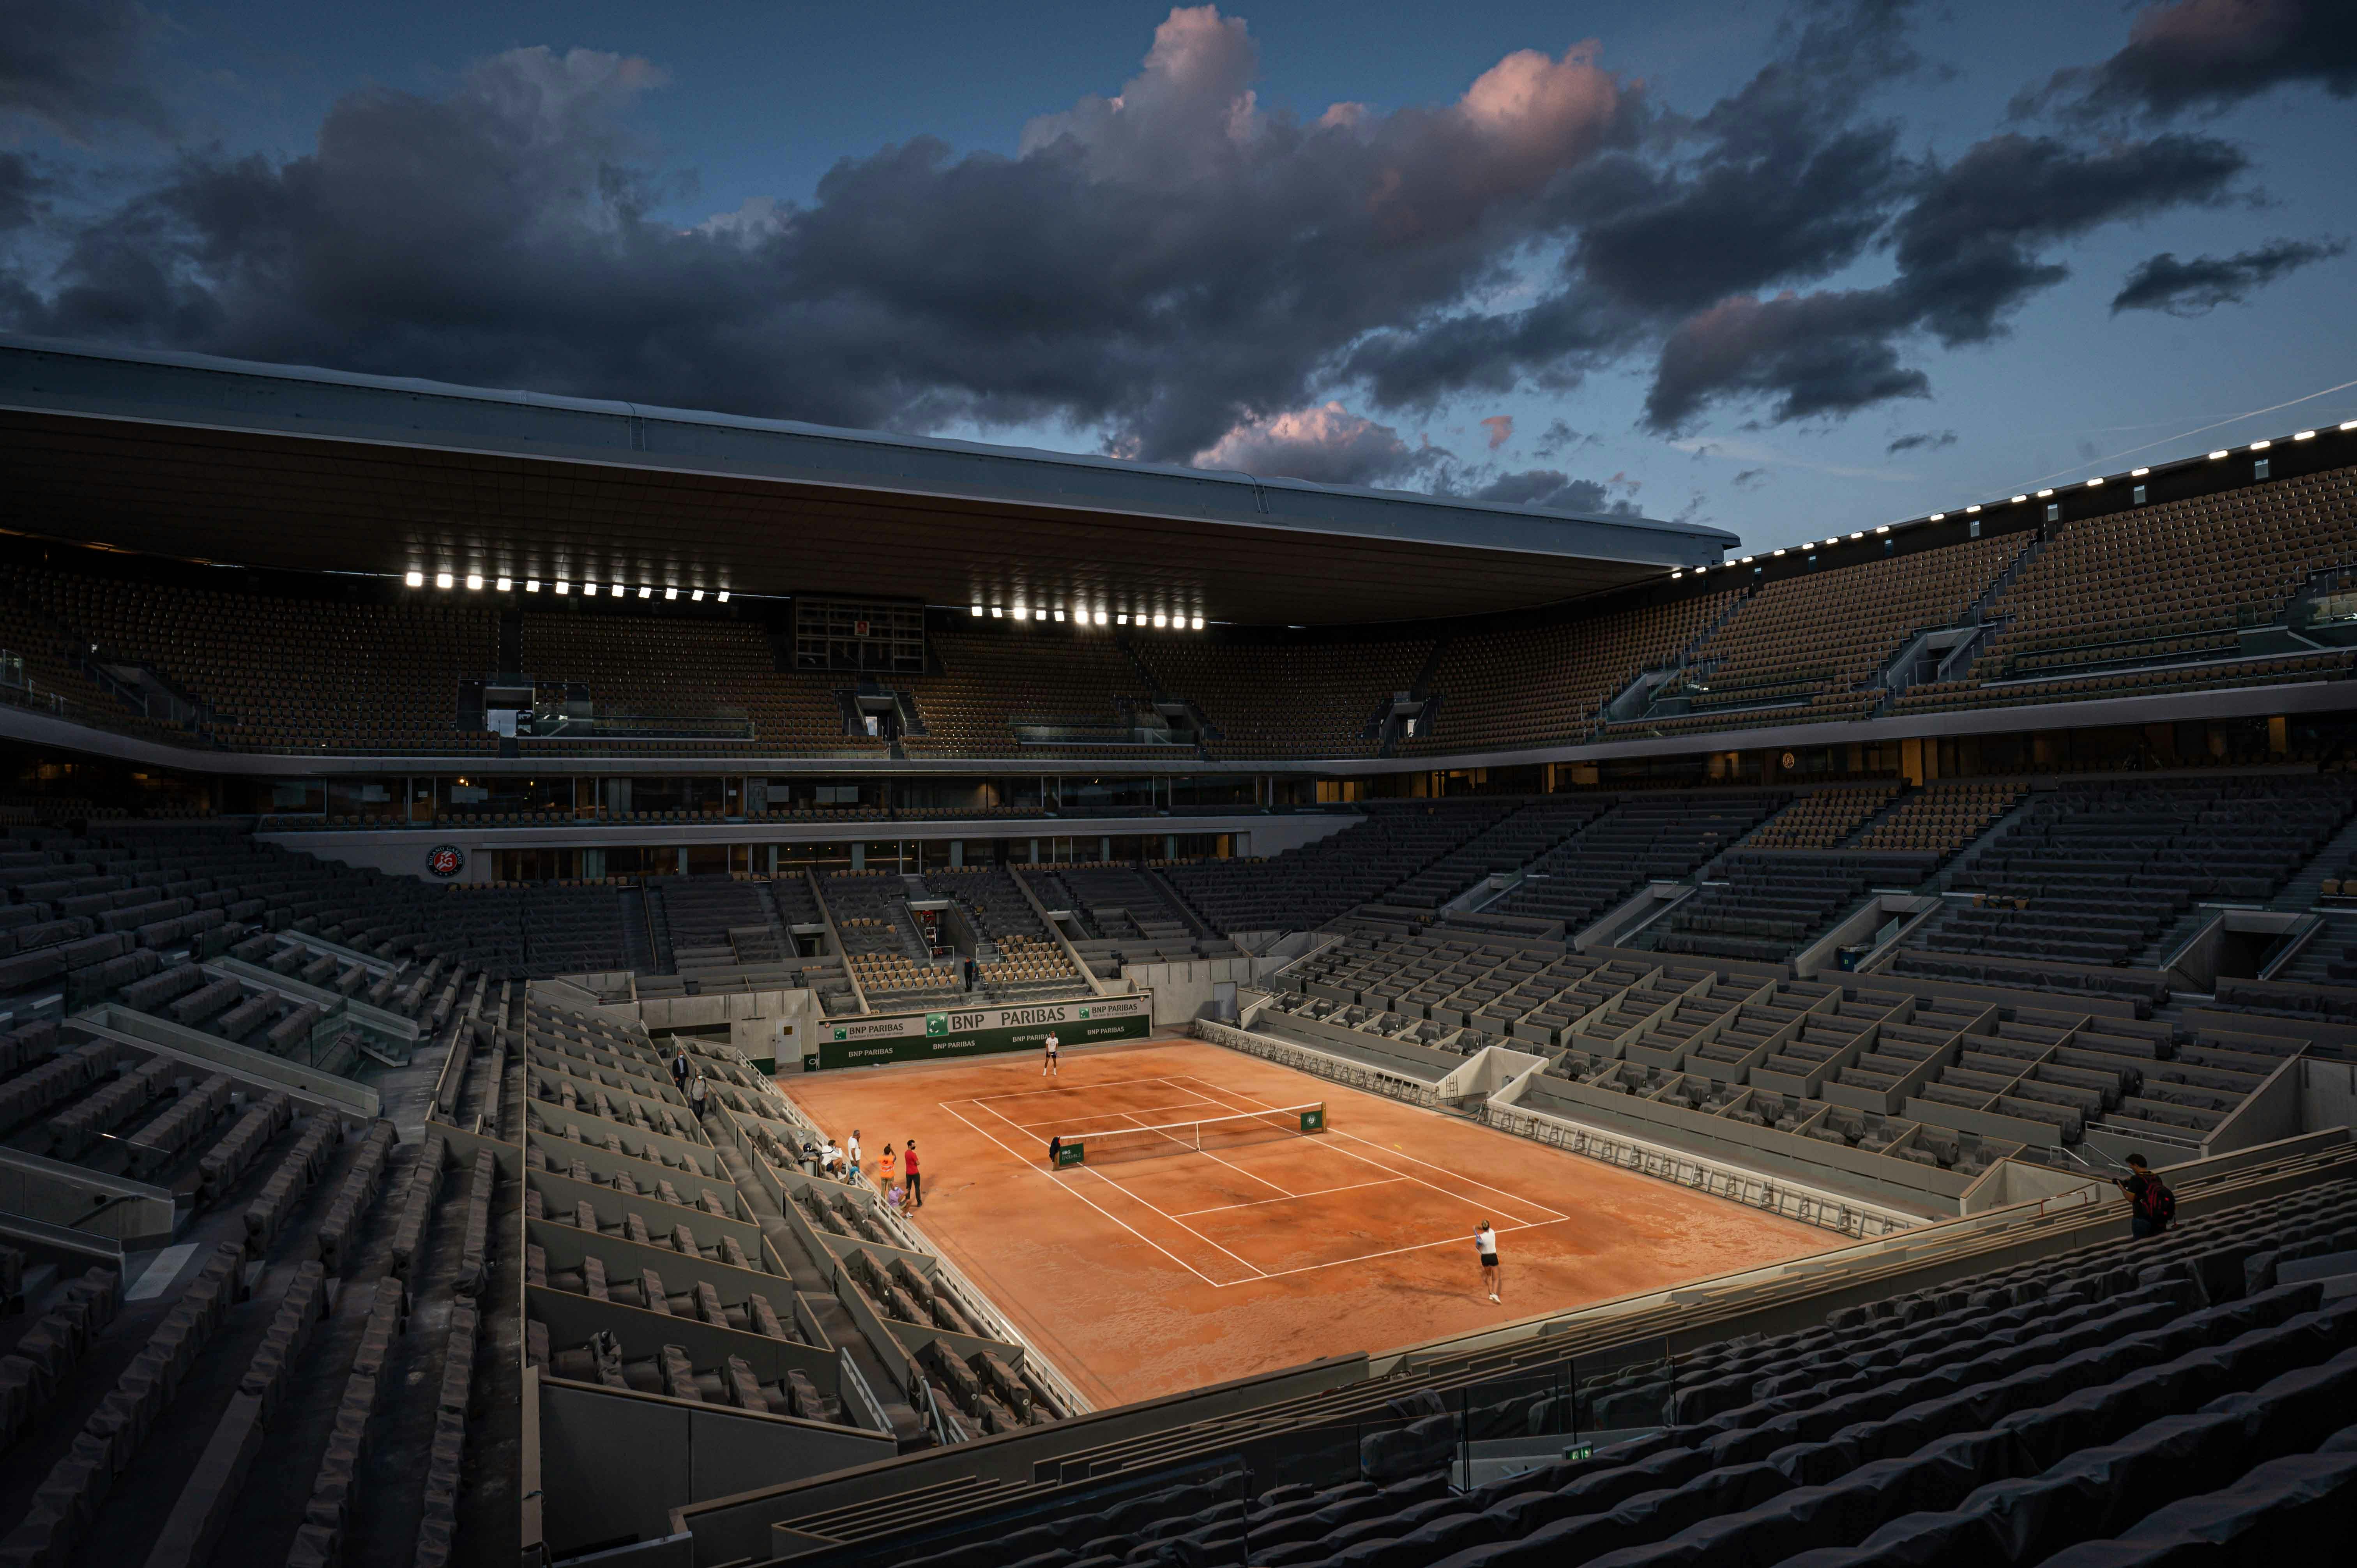 PHOTO GALLERY: visit the new Roland Garros stadium Roland Garros